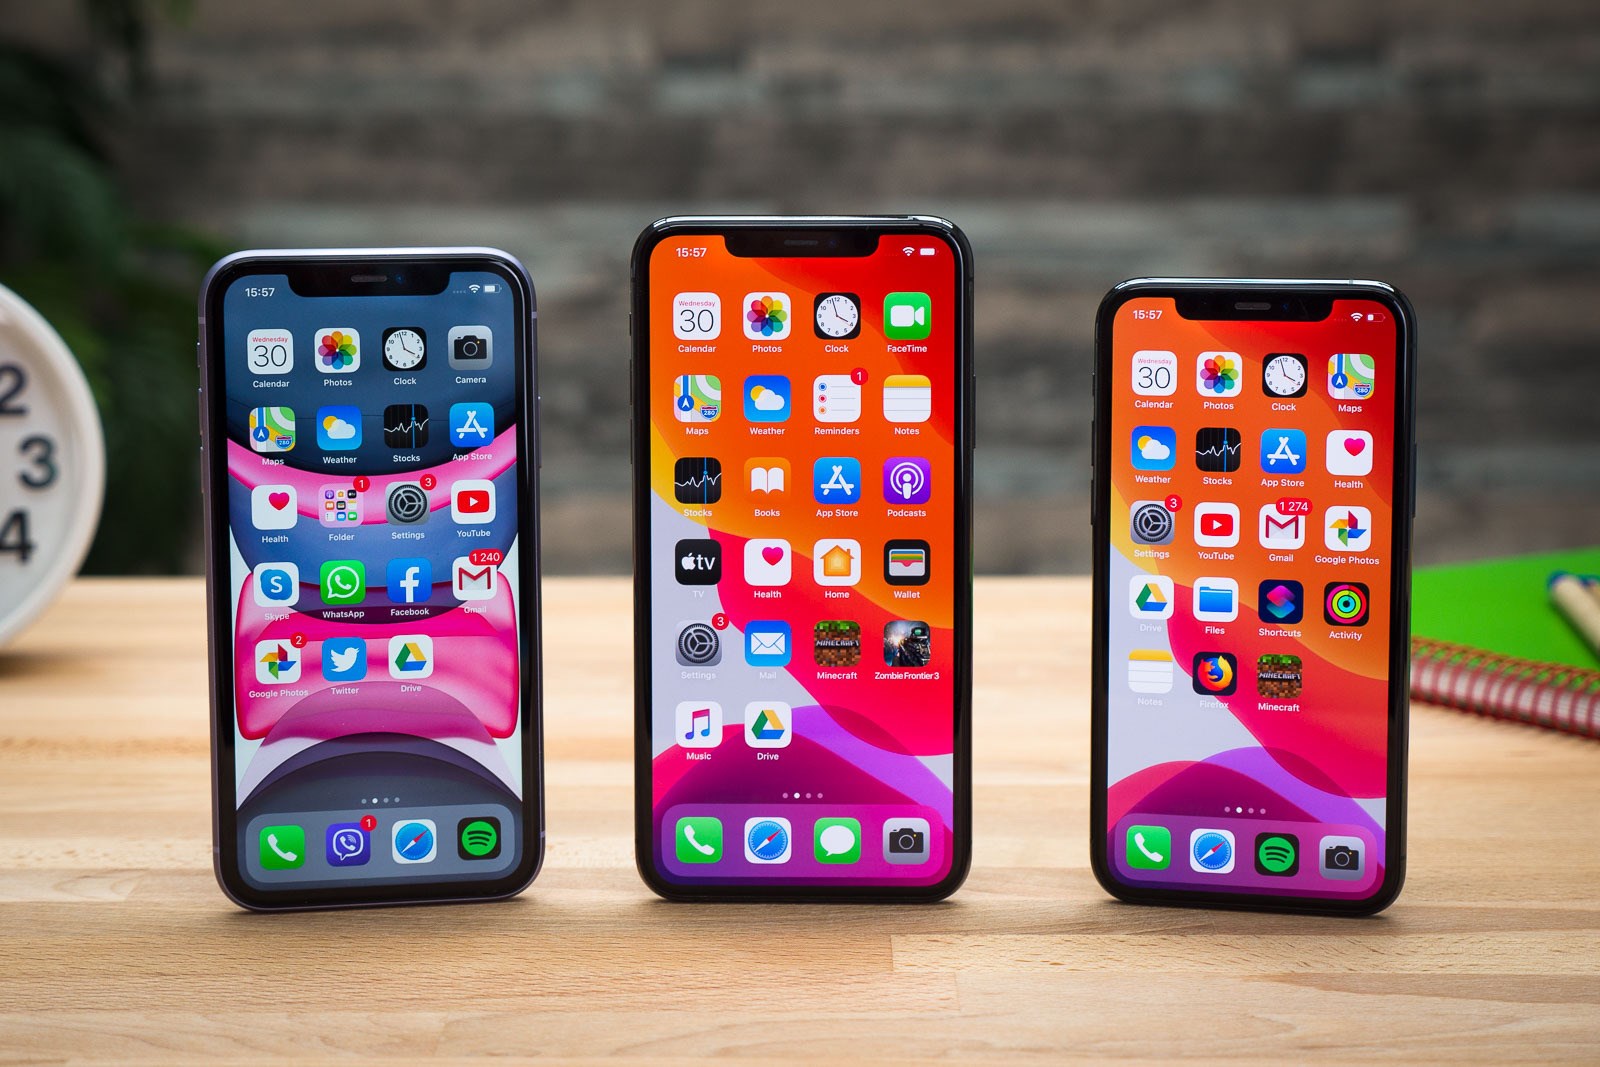 Akıllı telefon satışlarında 2020'nin dördüncü çeyreğinde lider Apple oldu